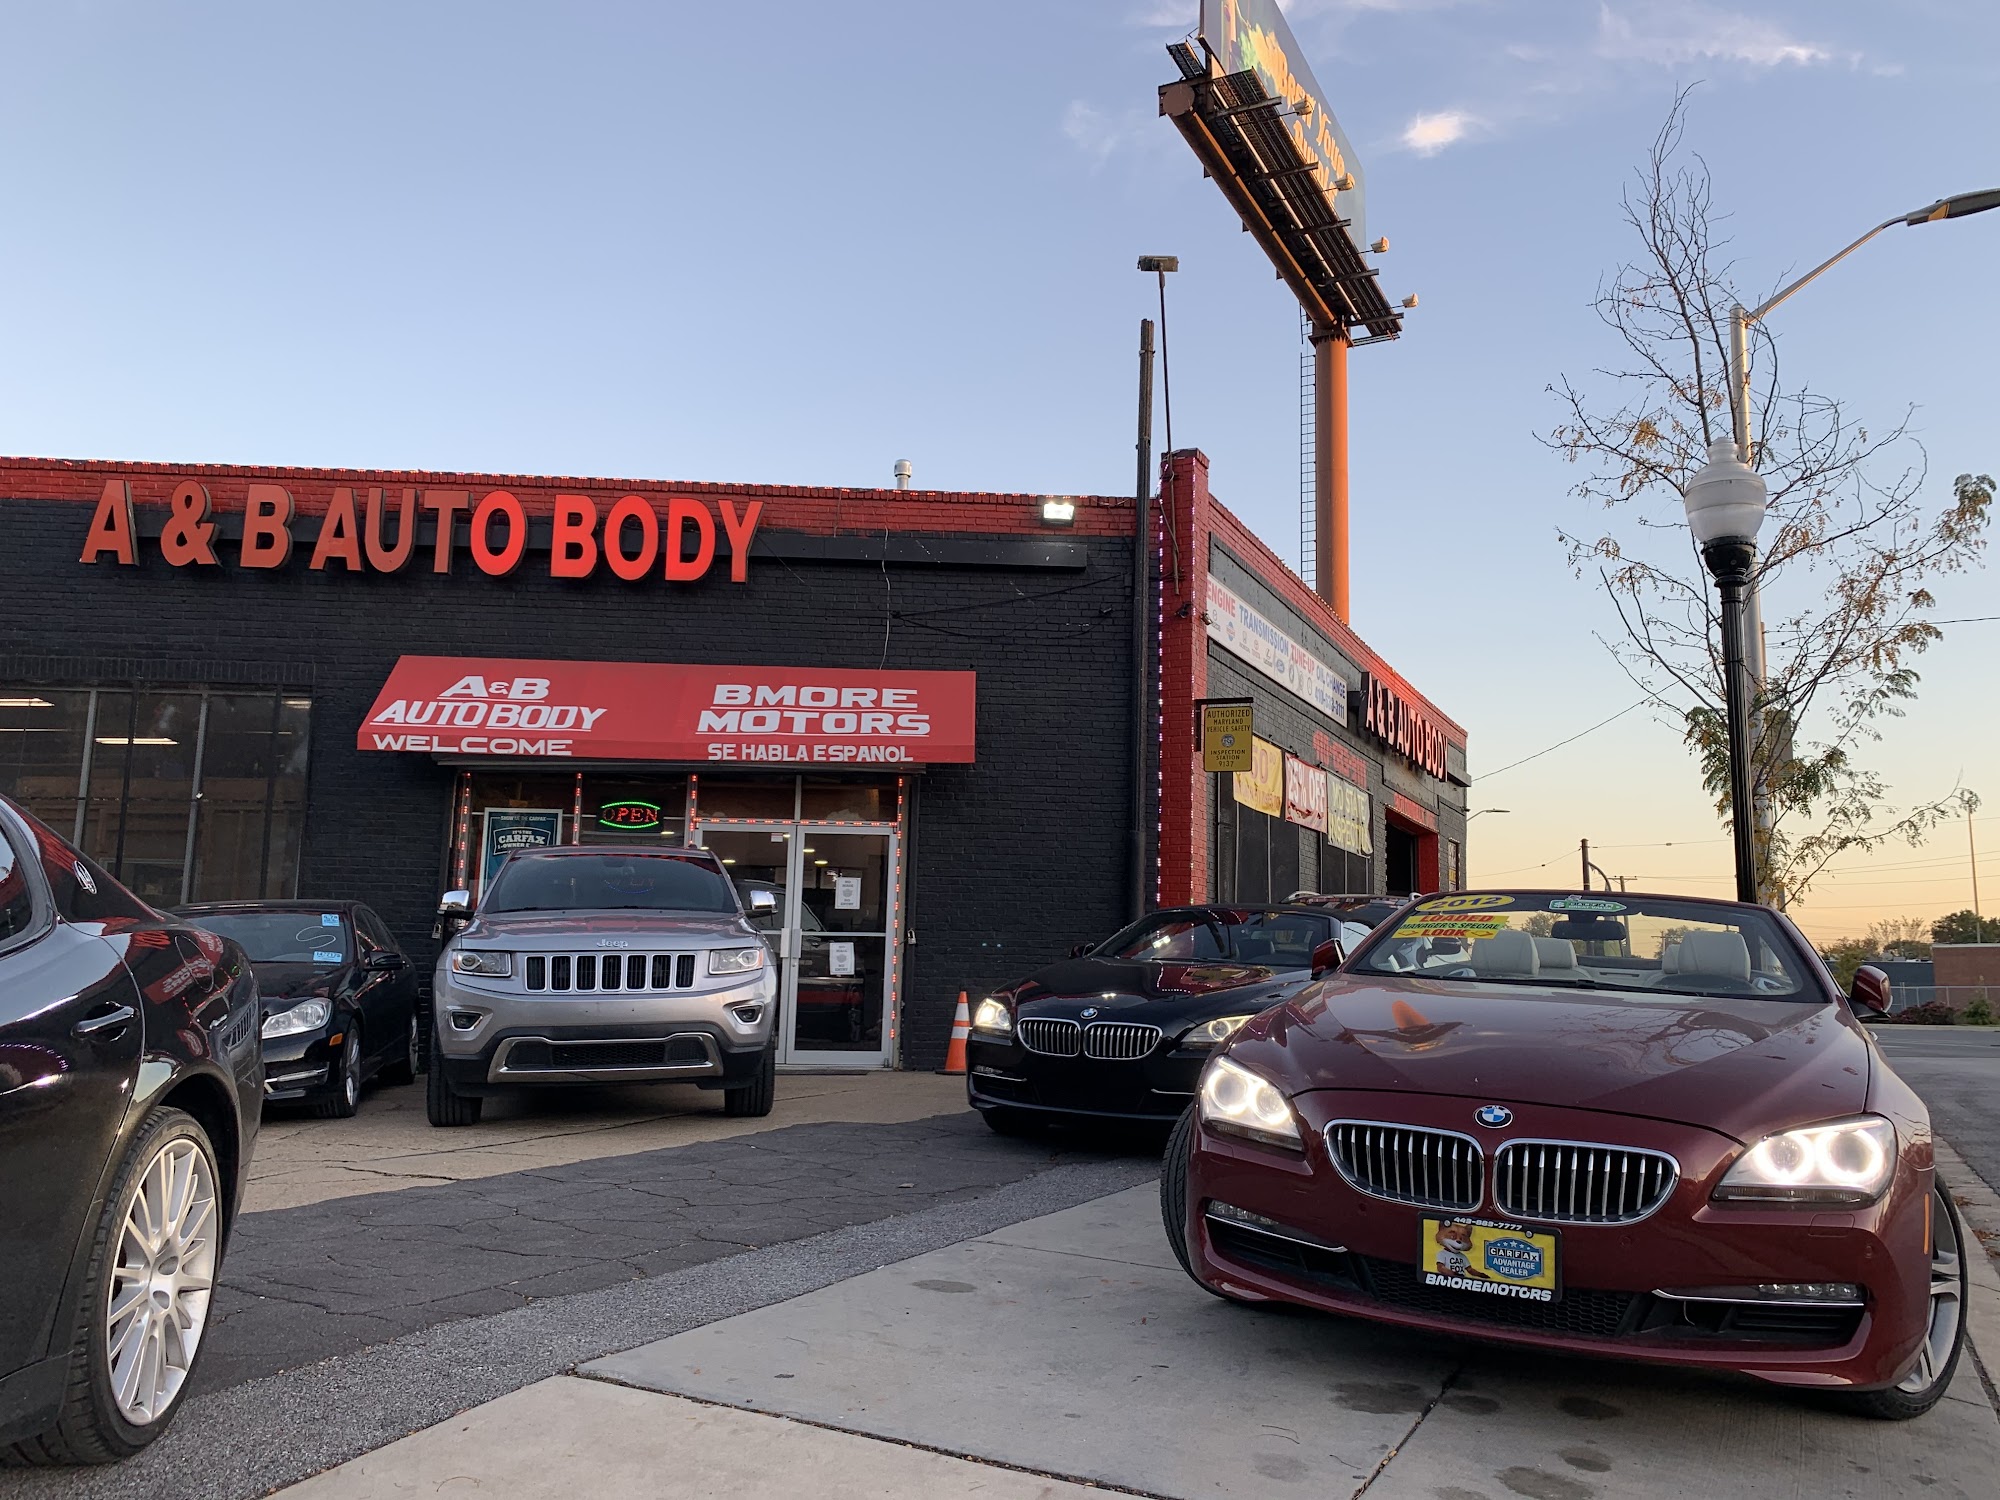 A&B Auto Body & Repair Shop